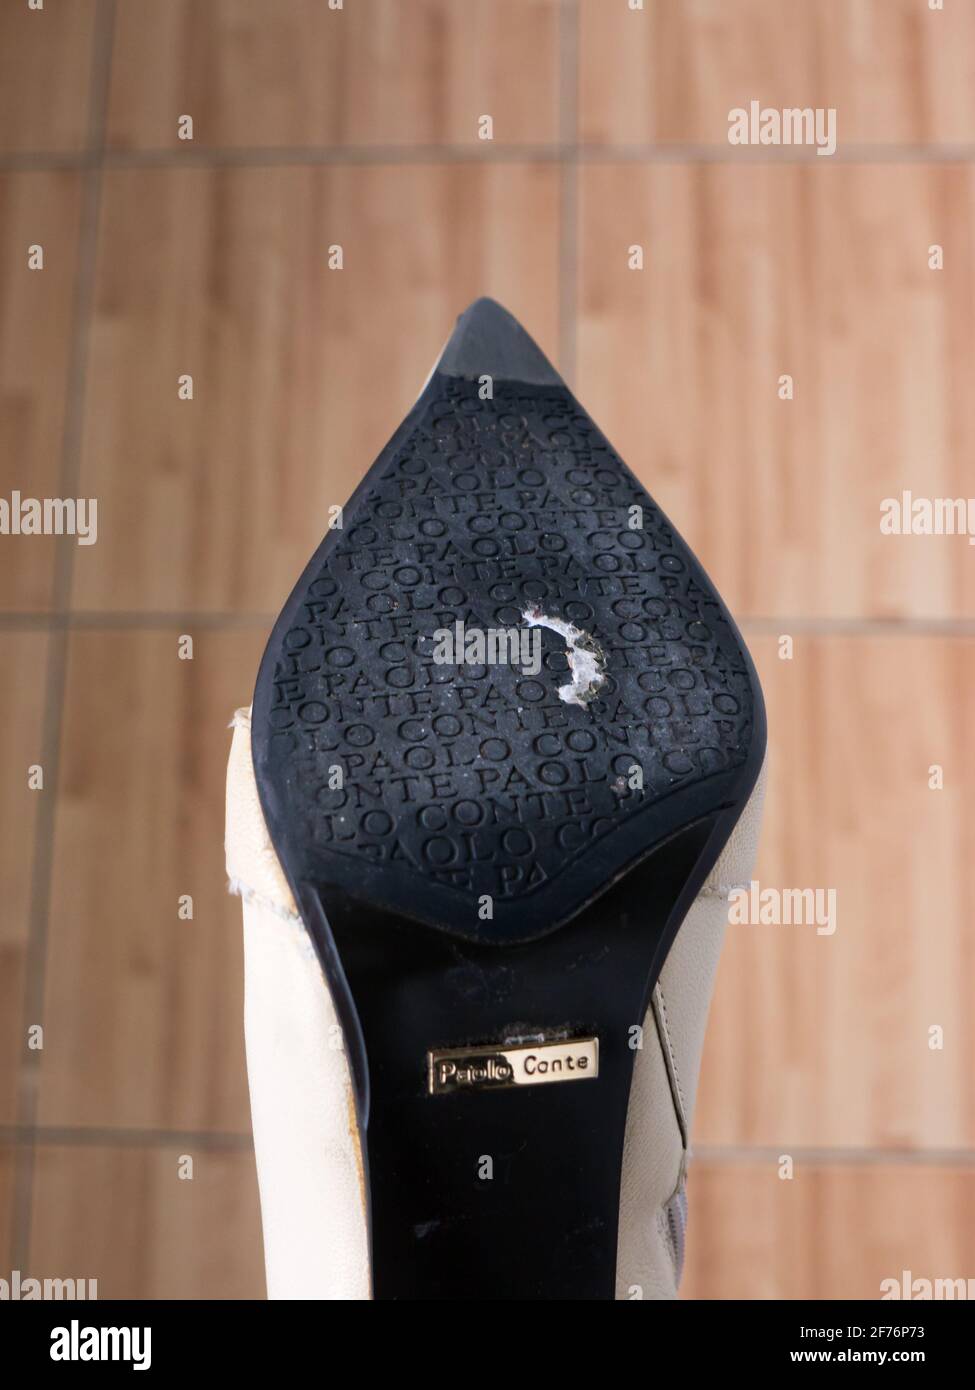 Woman shoes Paolo Conte Stock Photo - Alamy